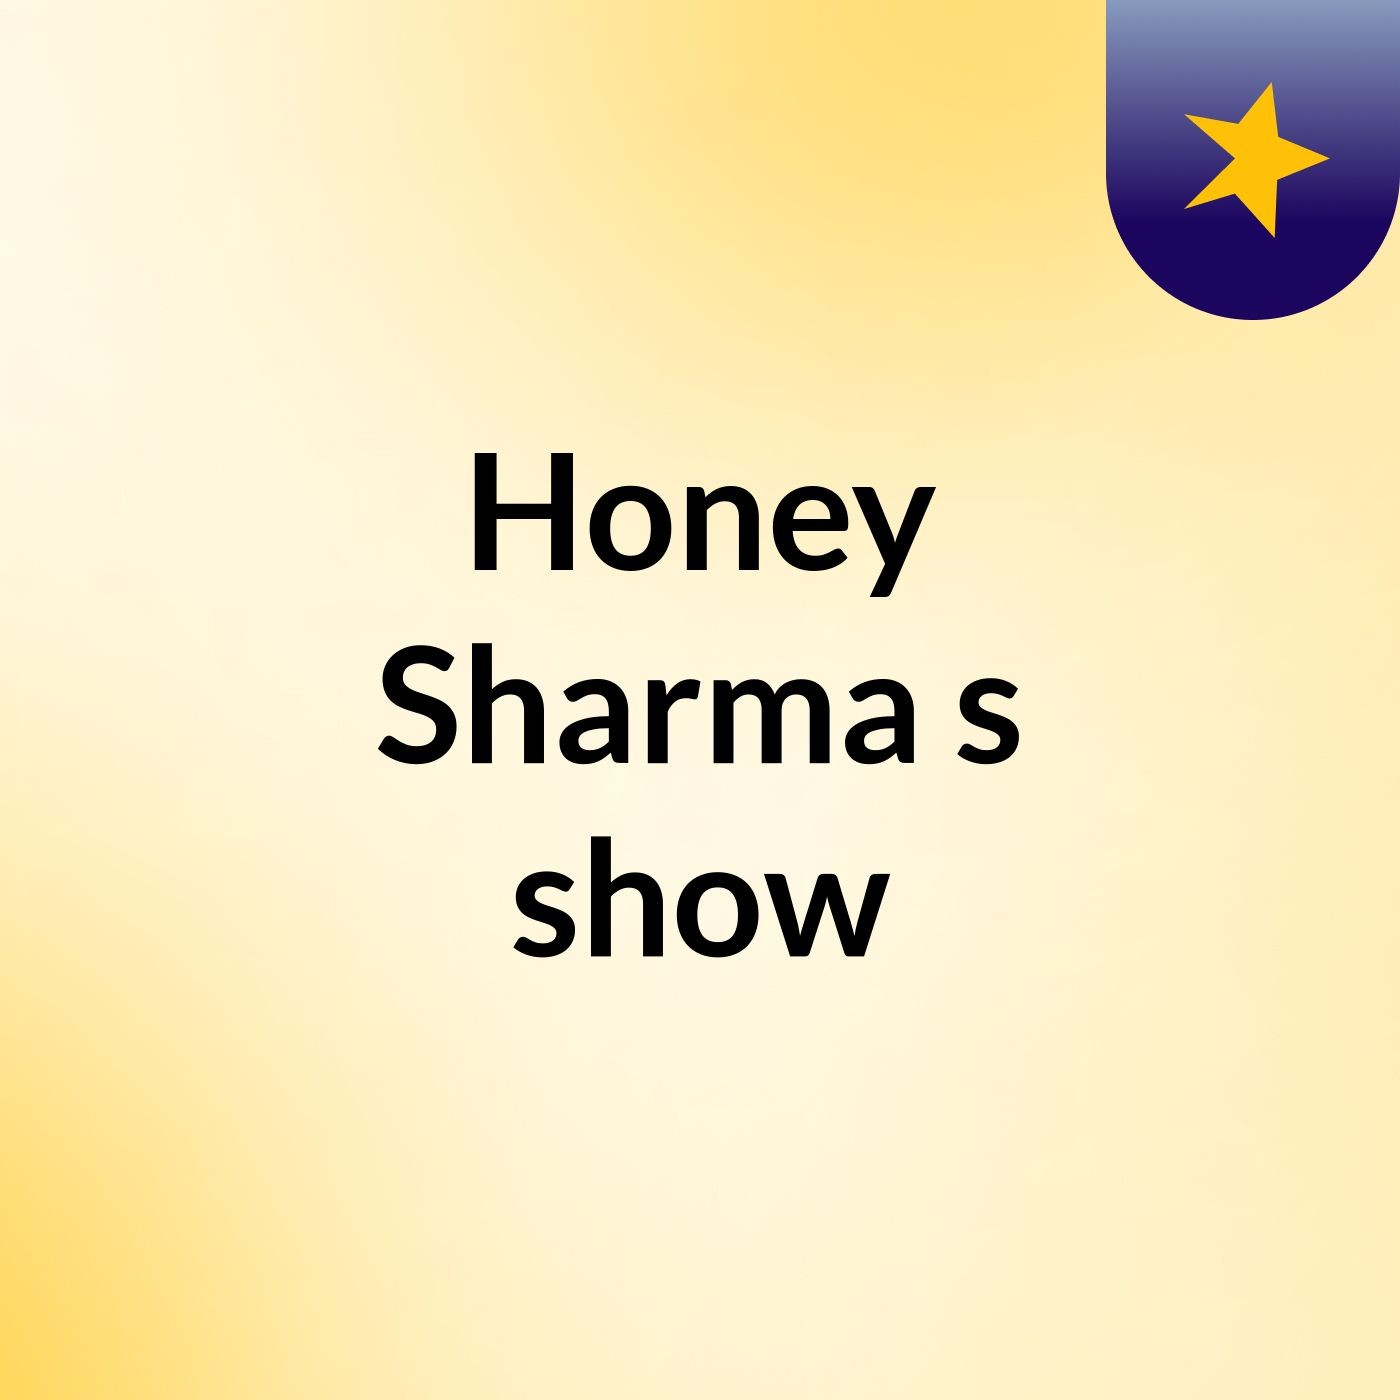 Honey Sharma's show